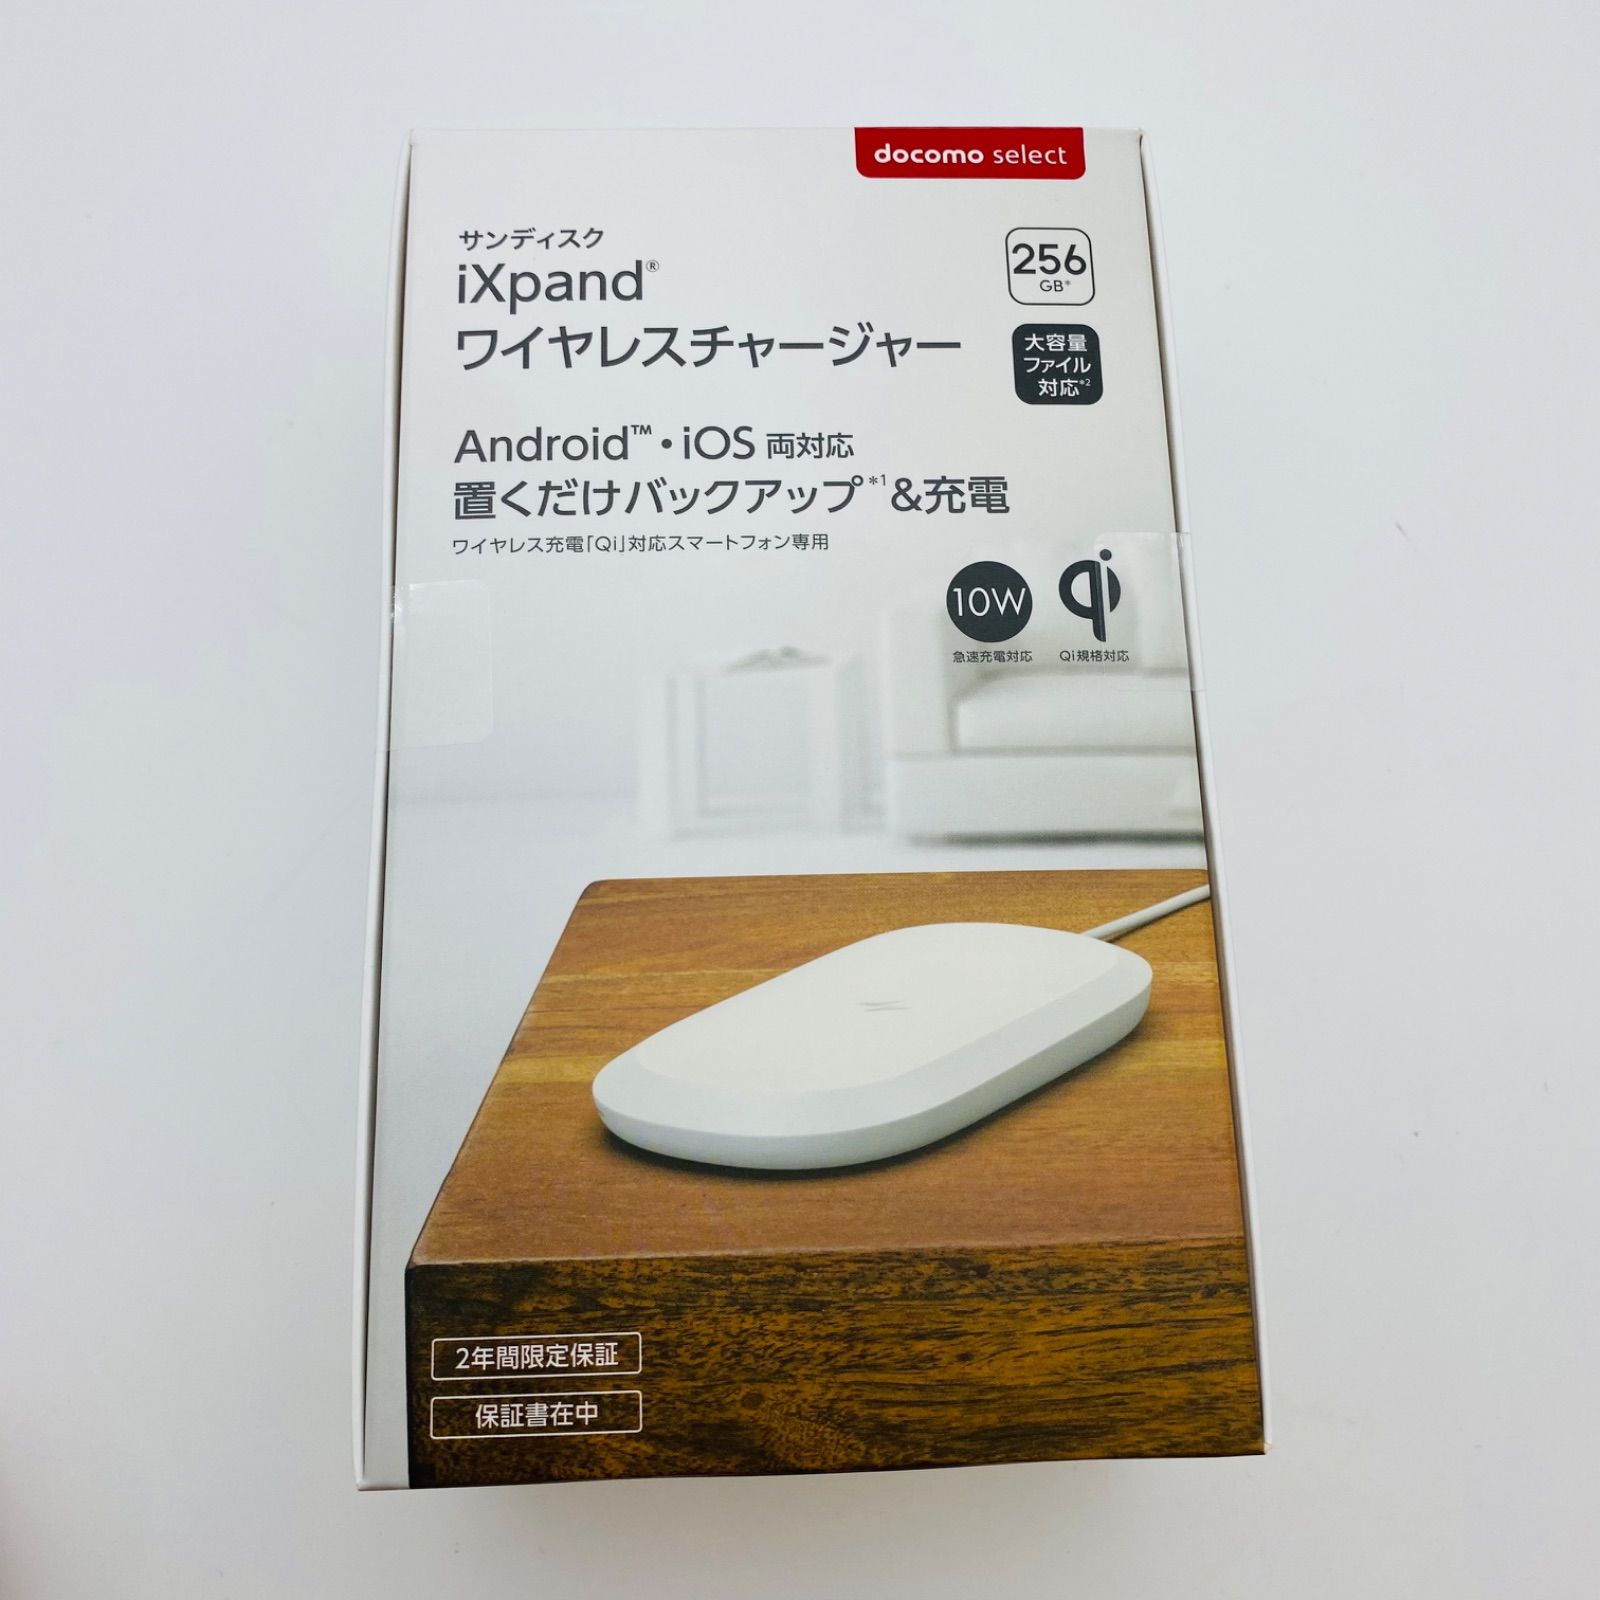 SanDisk iXpand ワイヤレスチャージャー 256GB - メルカリ